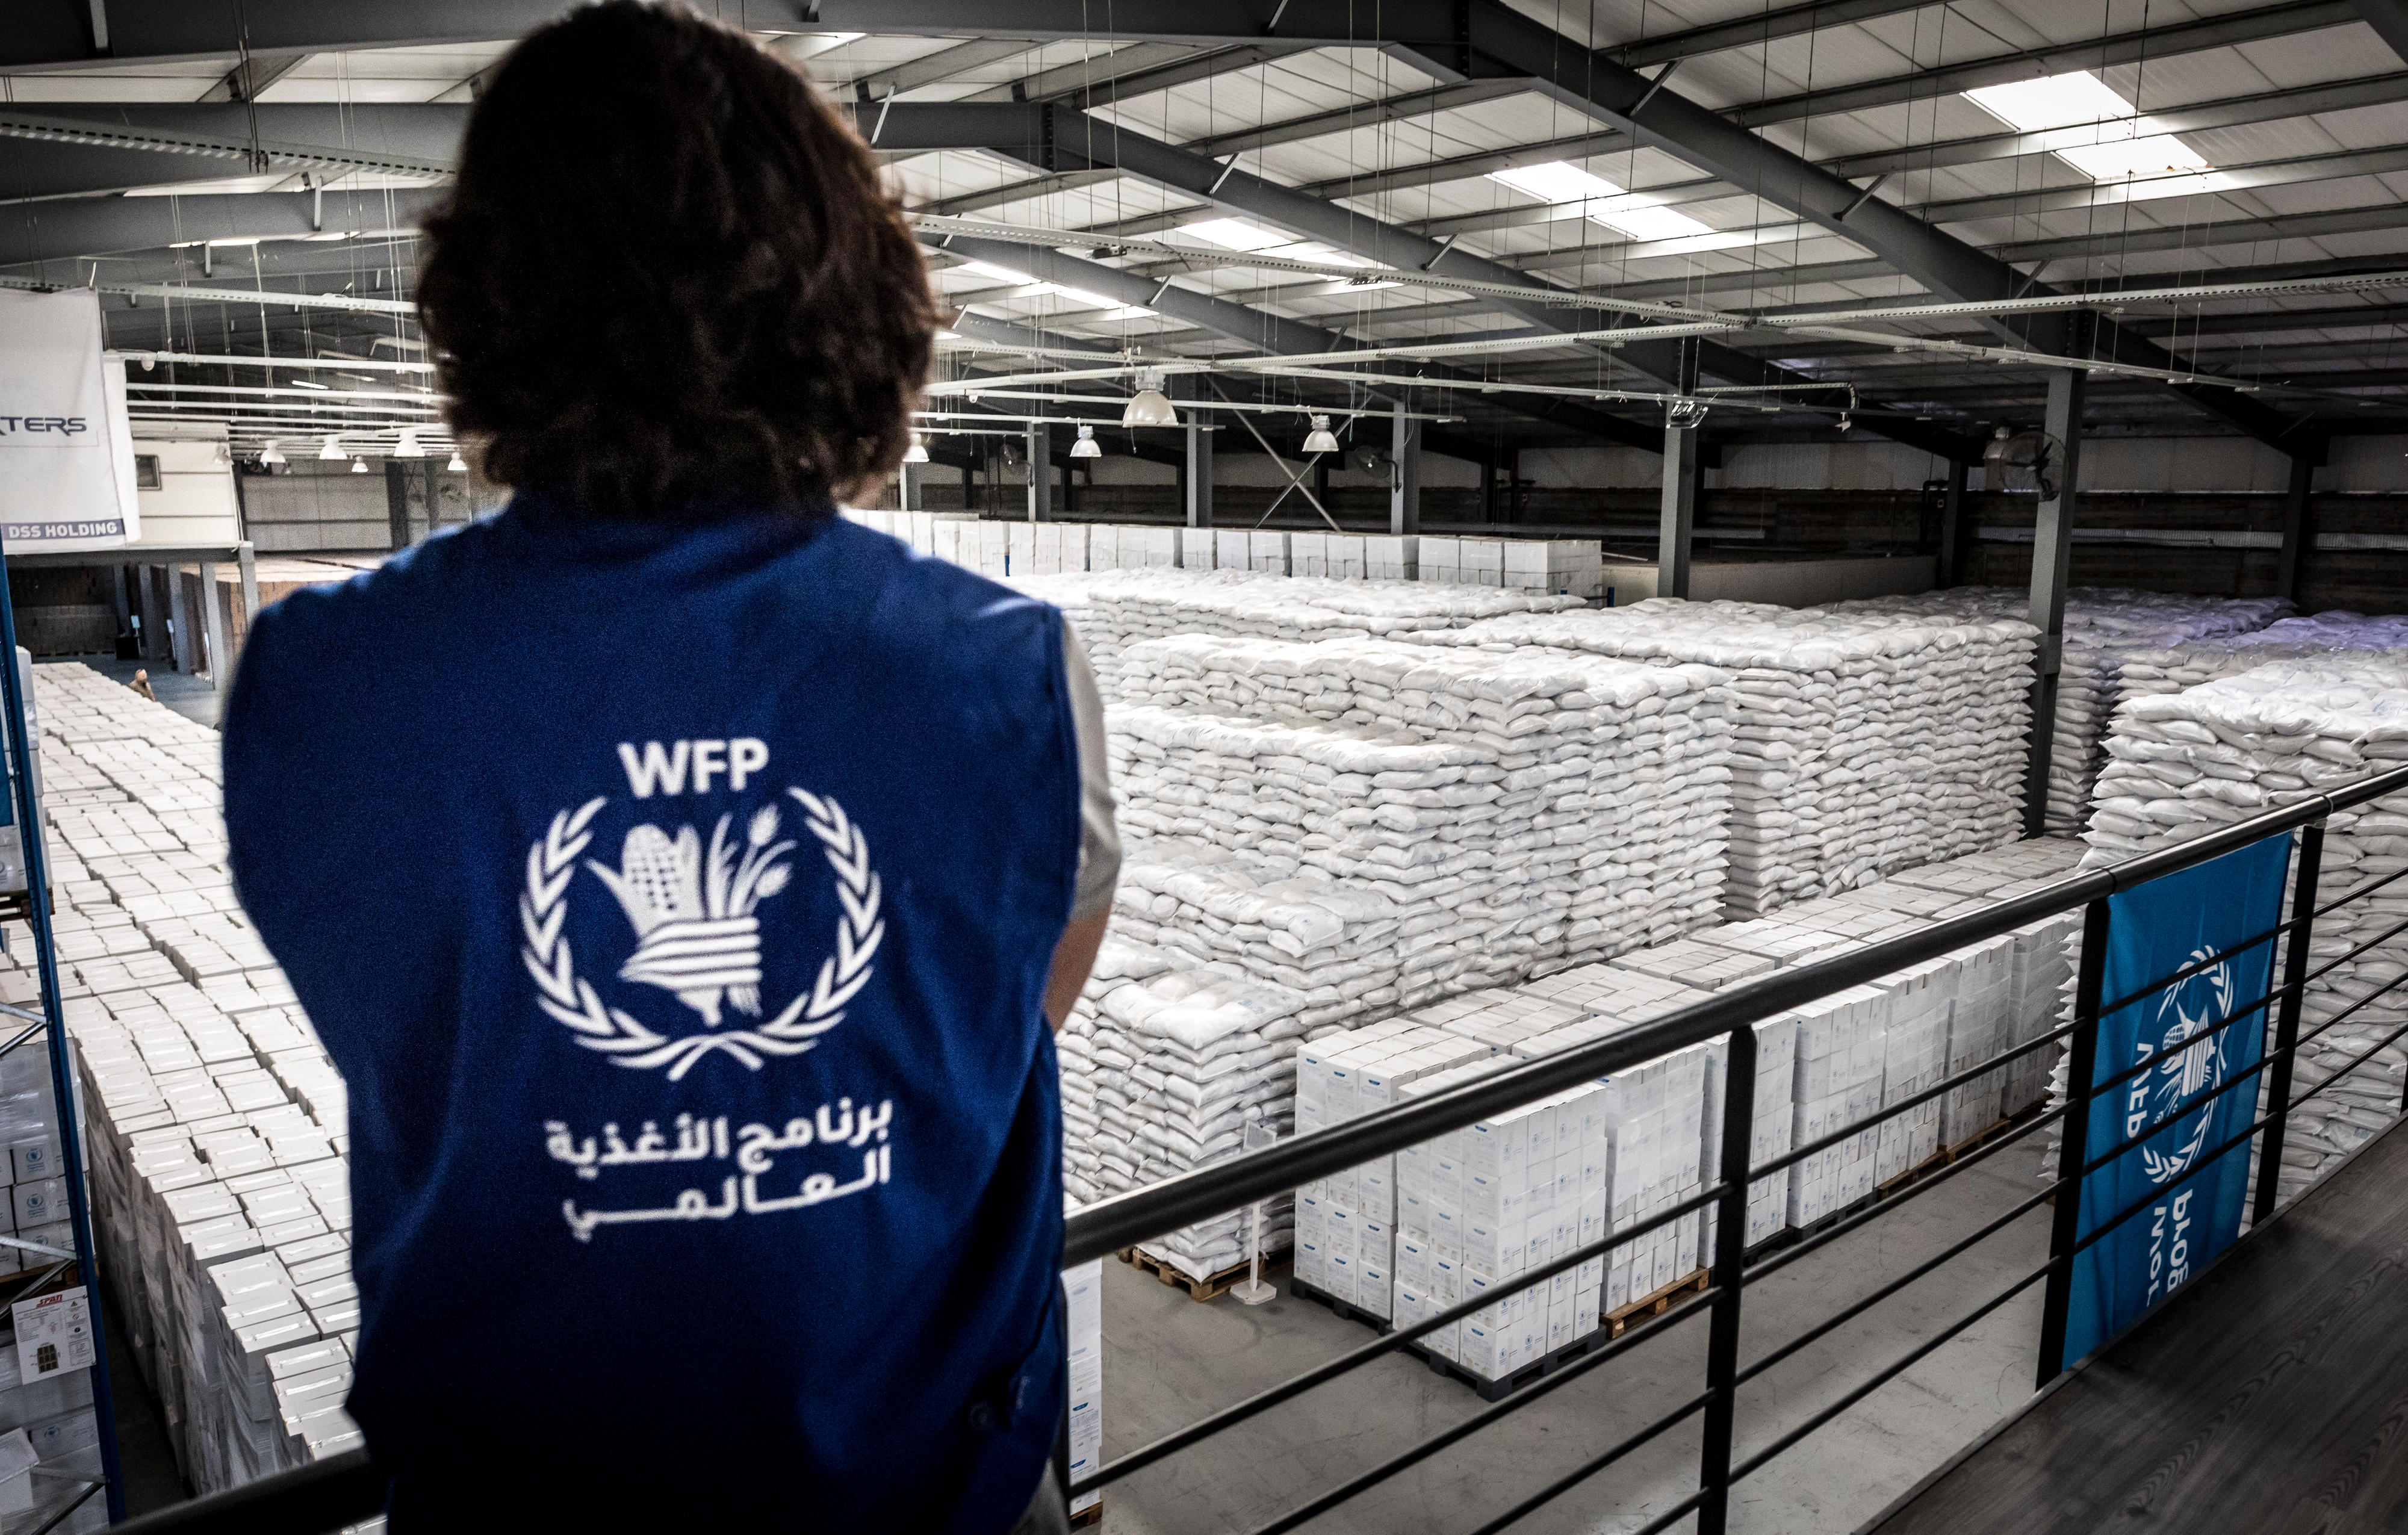 Lagerhaus für Lebensmittel des UN-Welternährungsprogramms (WFP) in Beirut, Libanon: Logo des WFP auf dem Rücken einer Mitarbeiterin oder eines Mitarbeiters